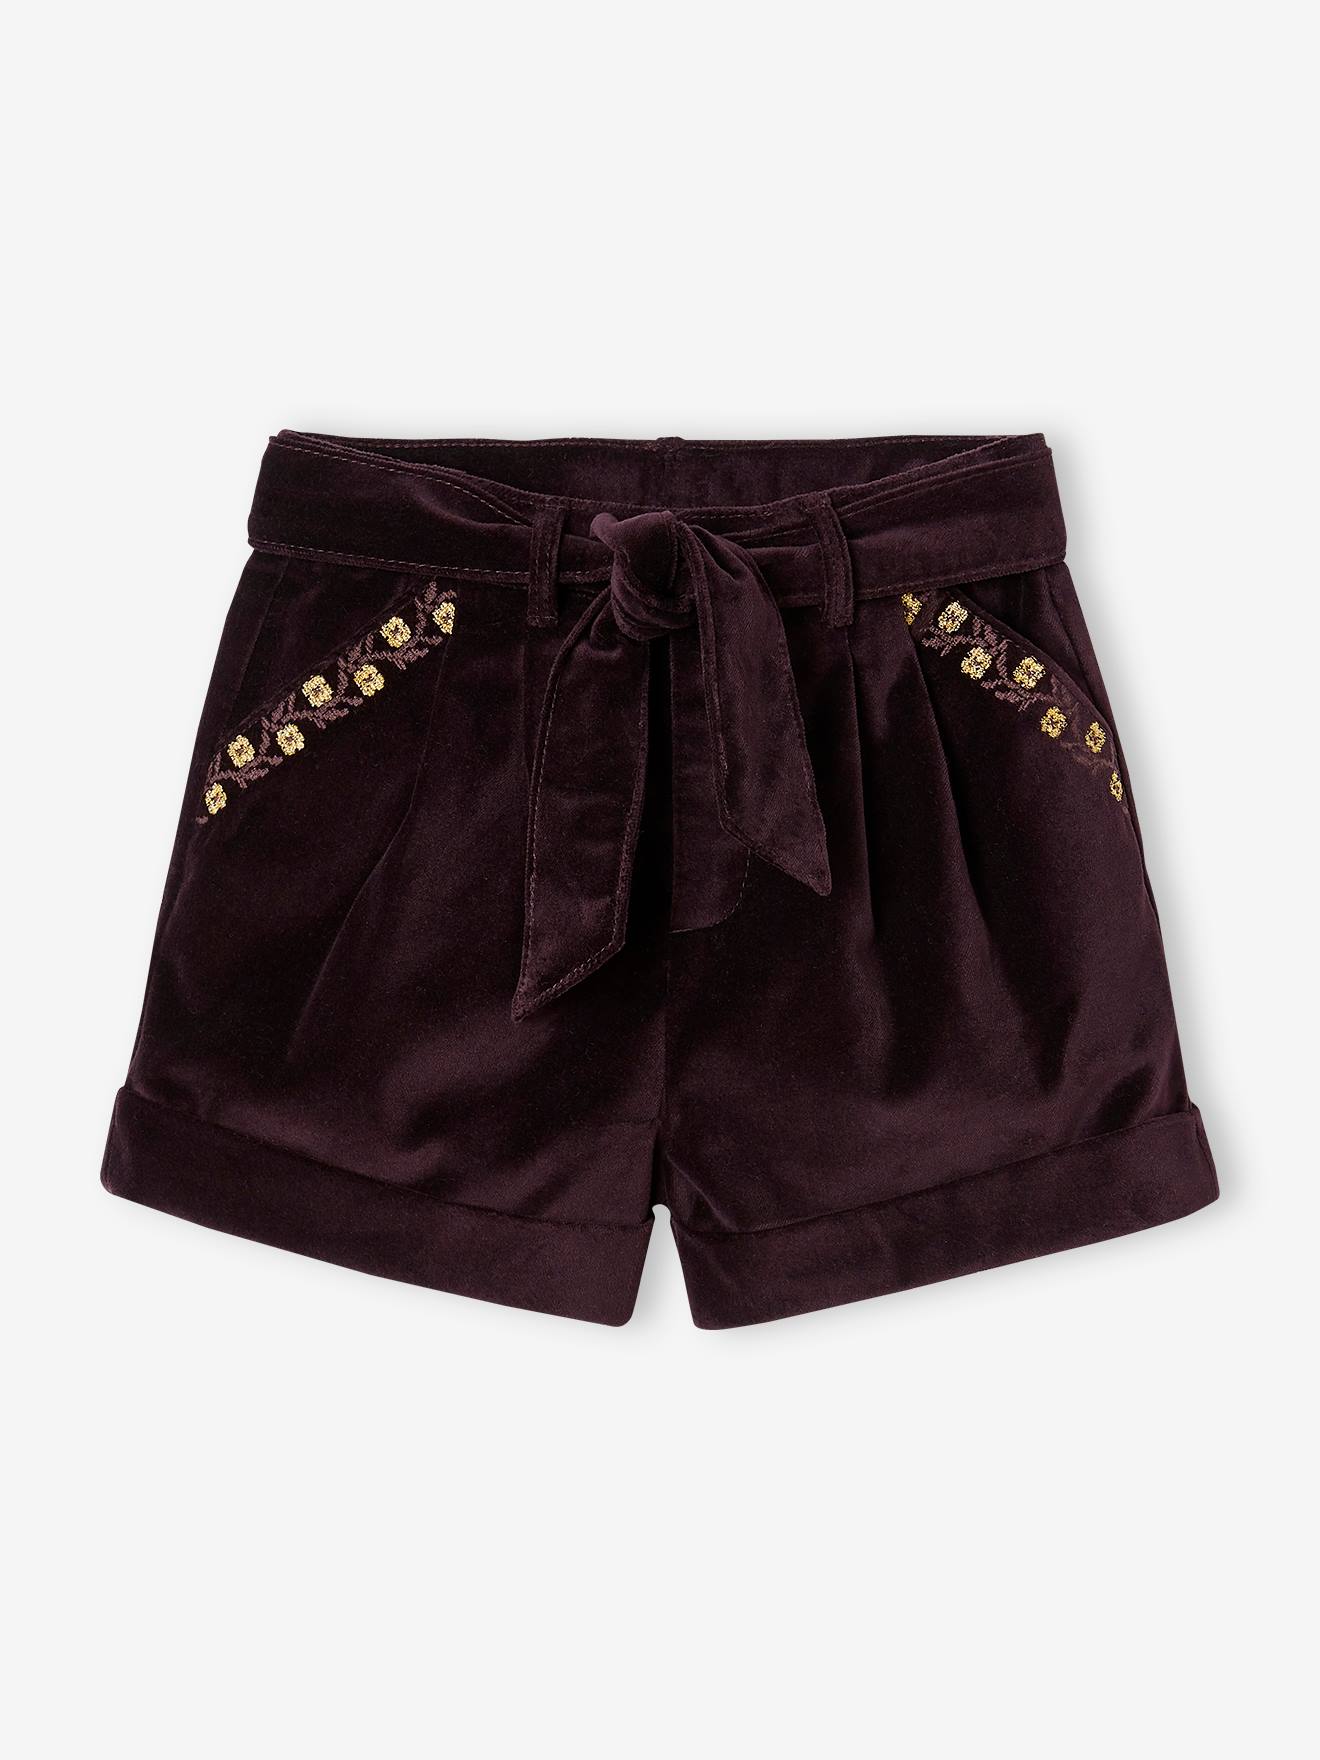 Fancy Shorts in Plain Velour, for Girls aubergine